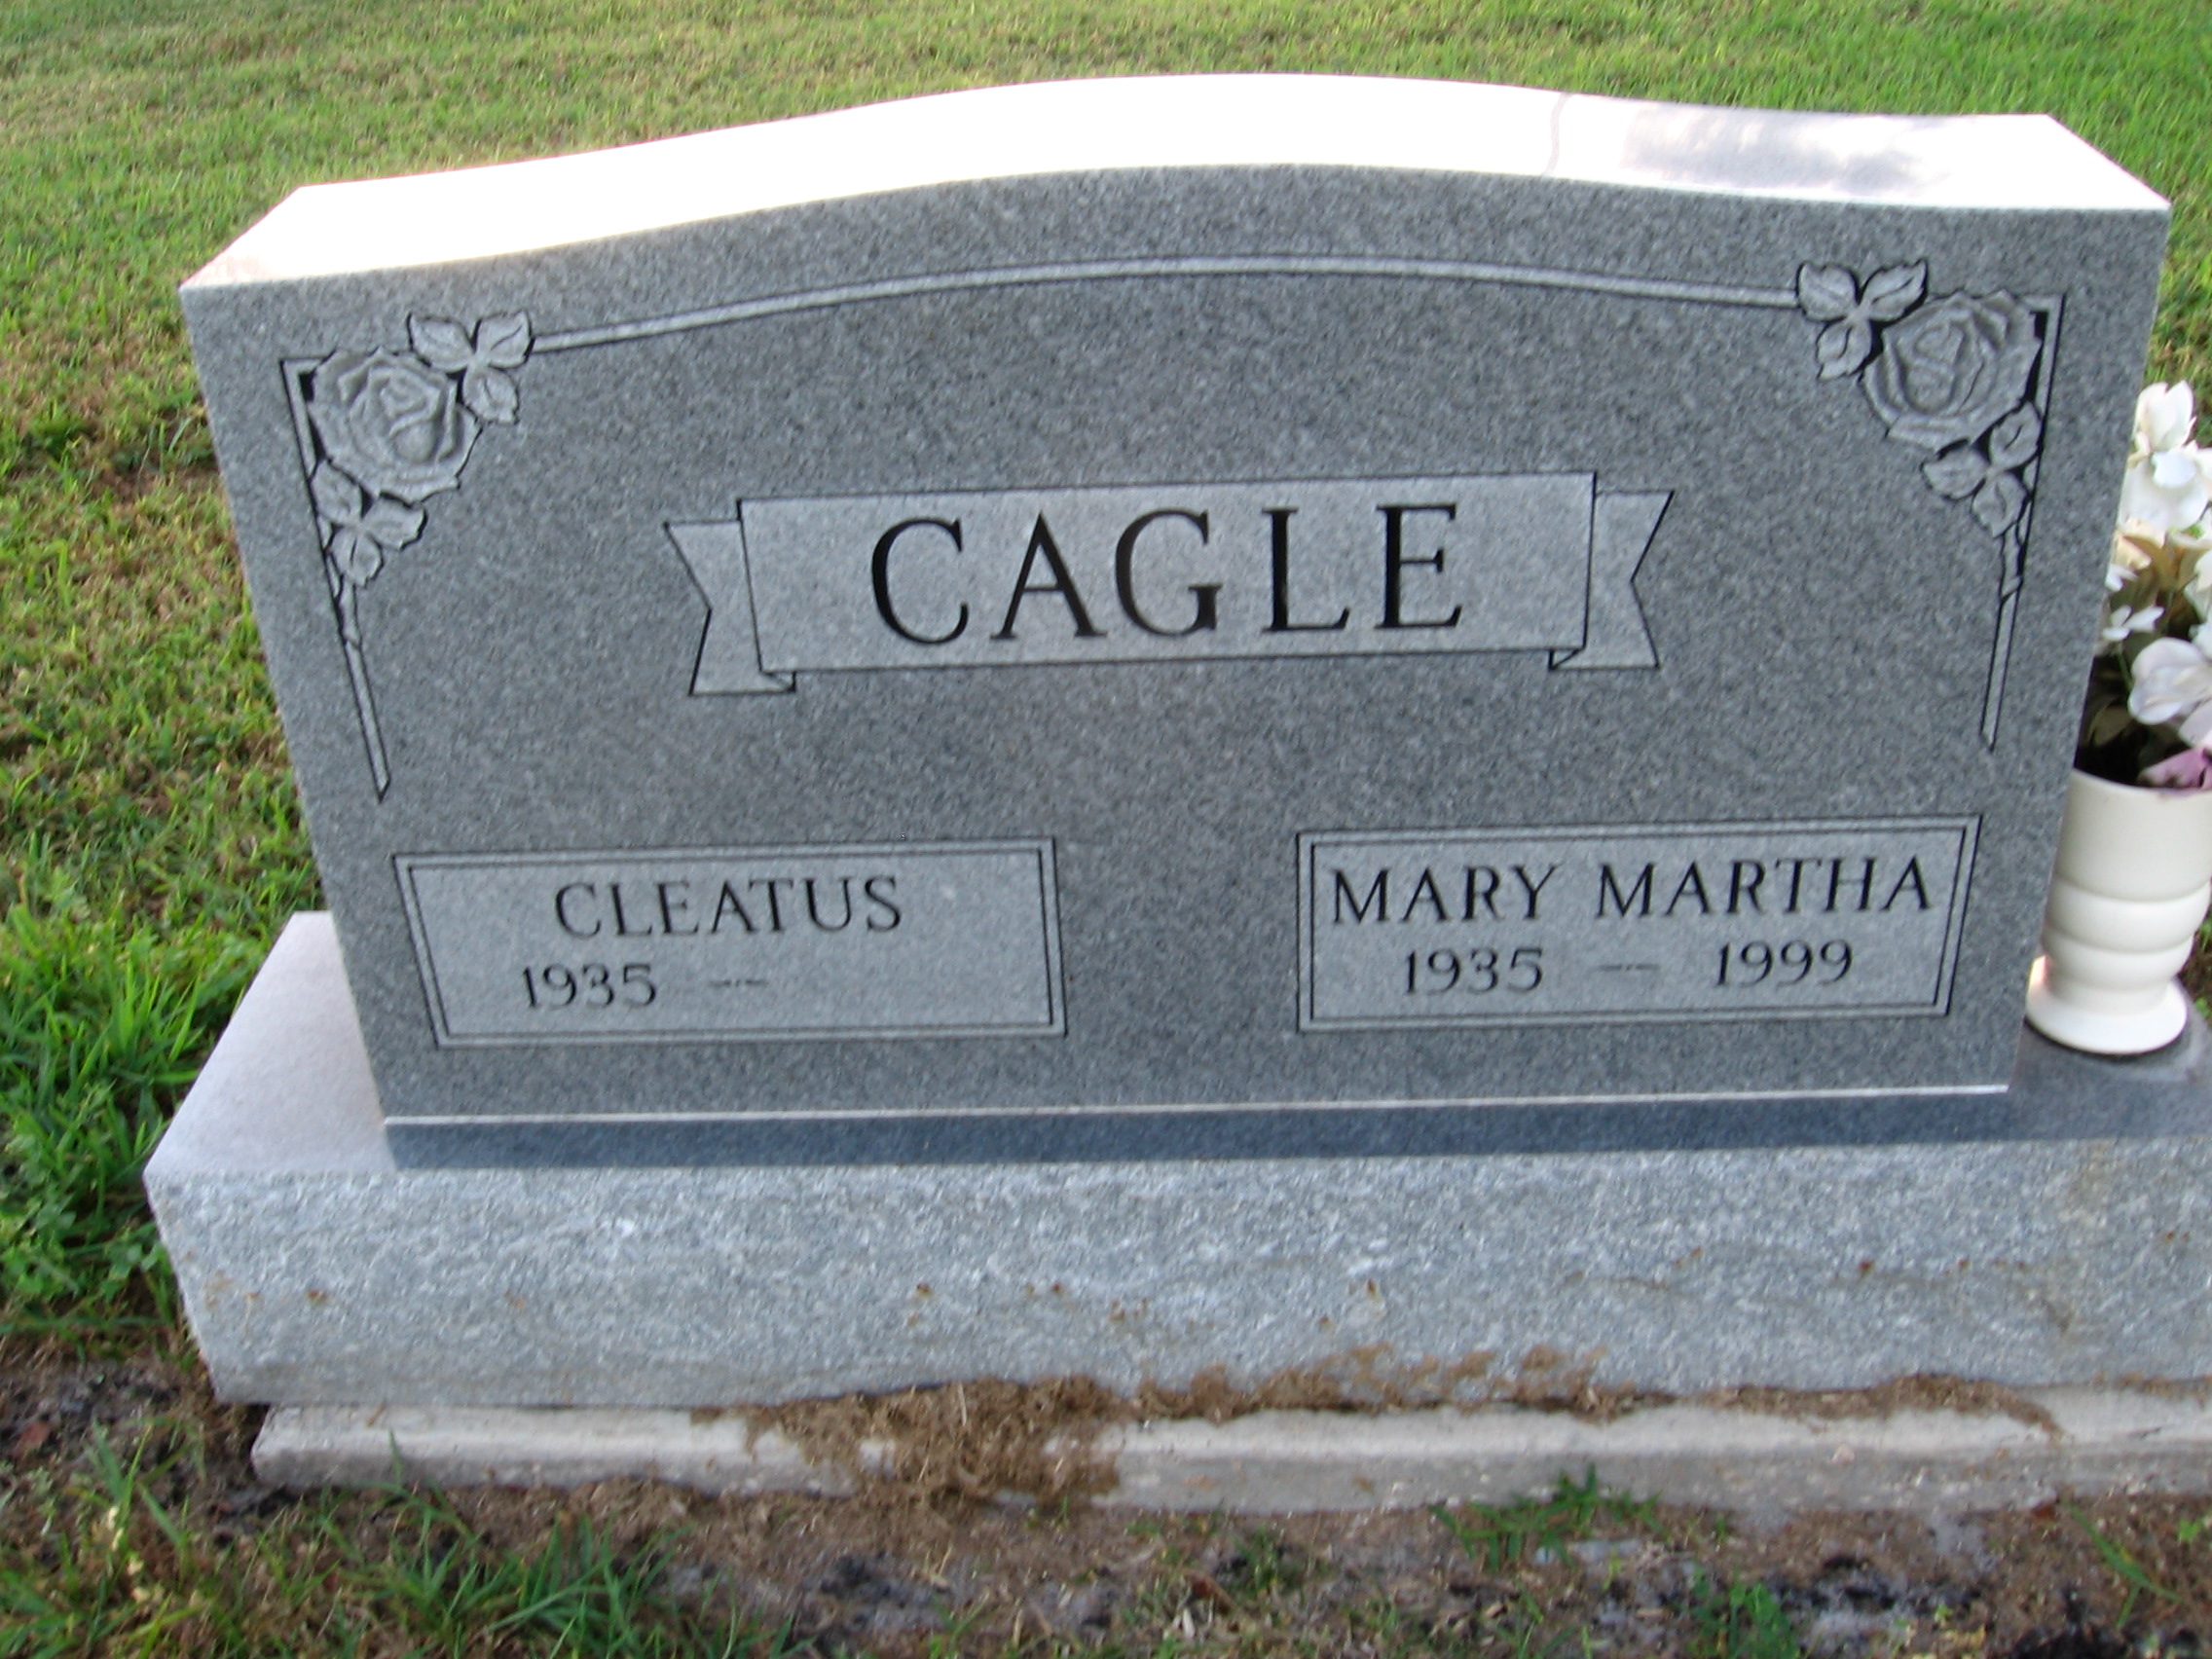 Mary Martha Cagle